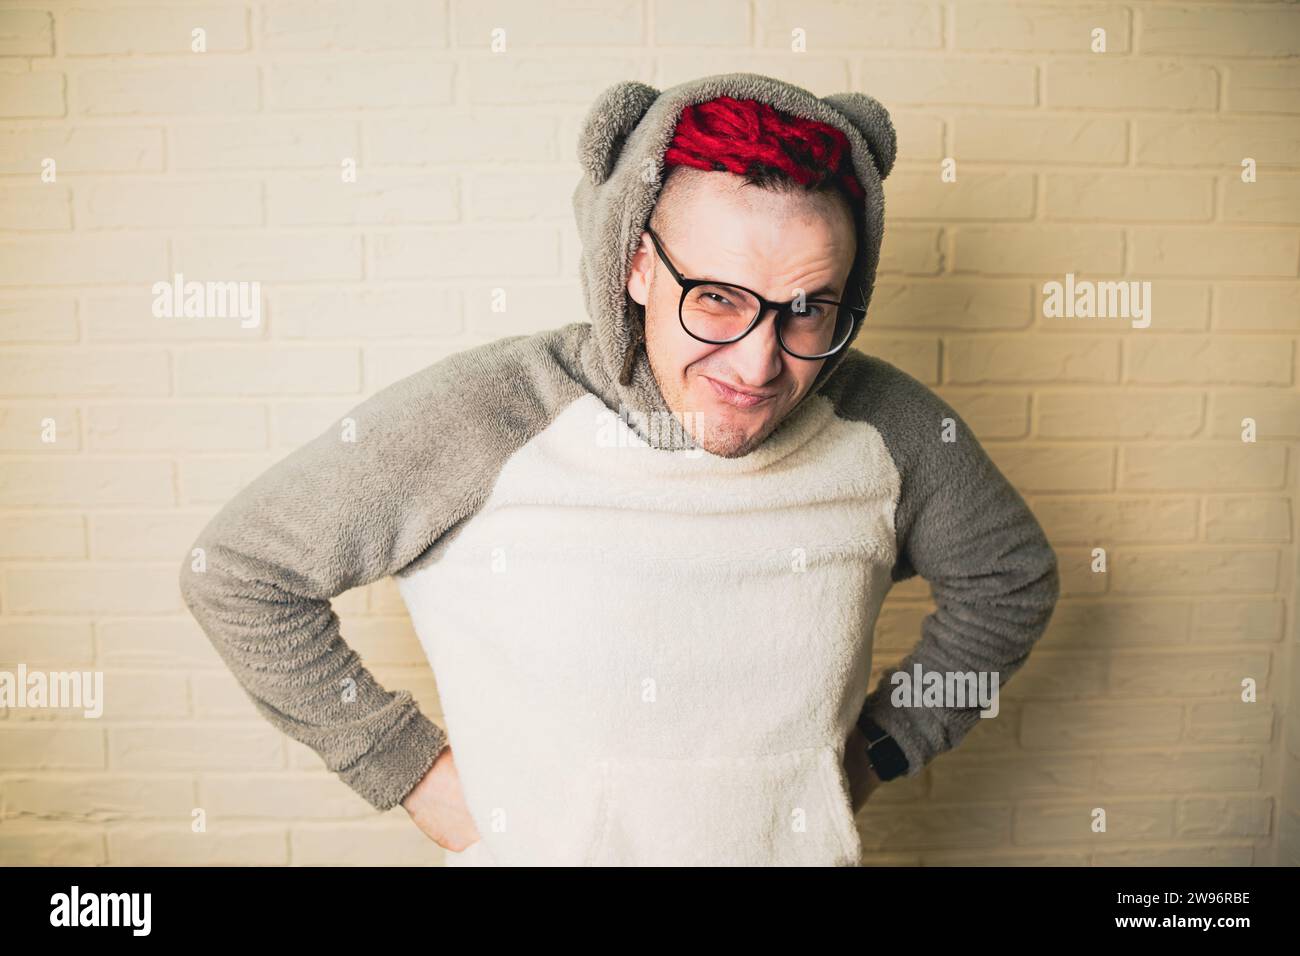 jeune homme hipster attrayant avec des dreadlocks rouges dans des lunettes et un pull blanc sur le fond d'un mur de briques. Banque D'Images